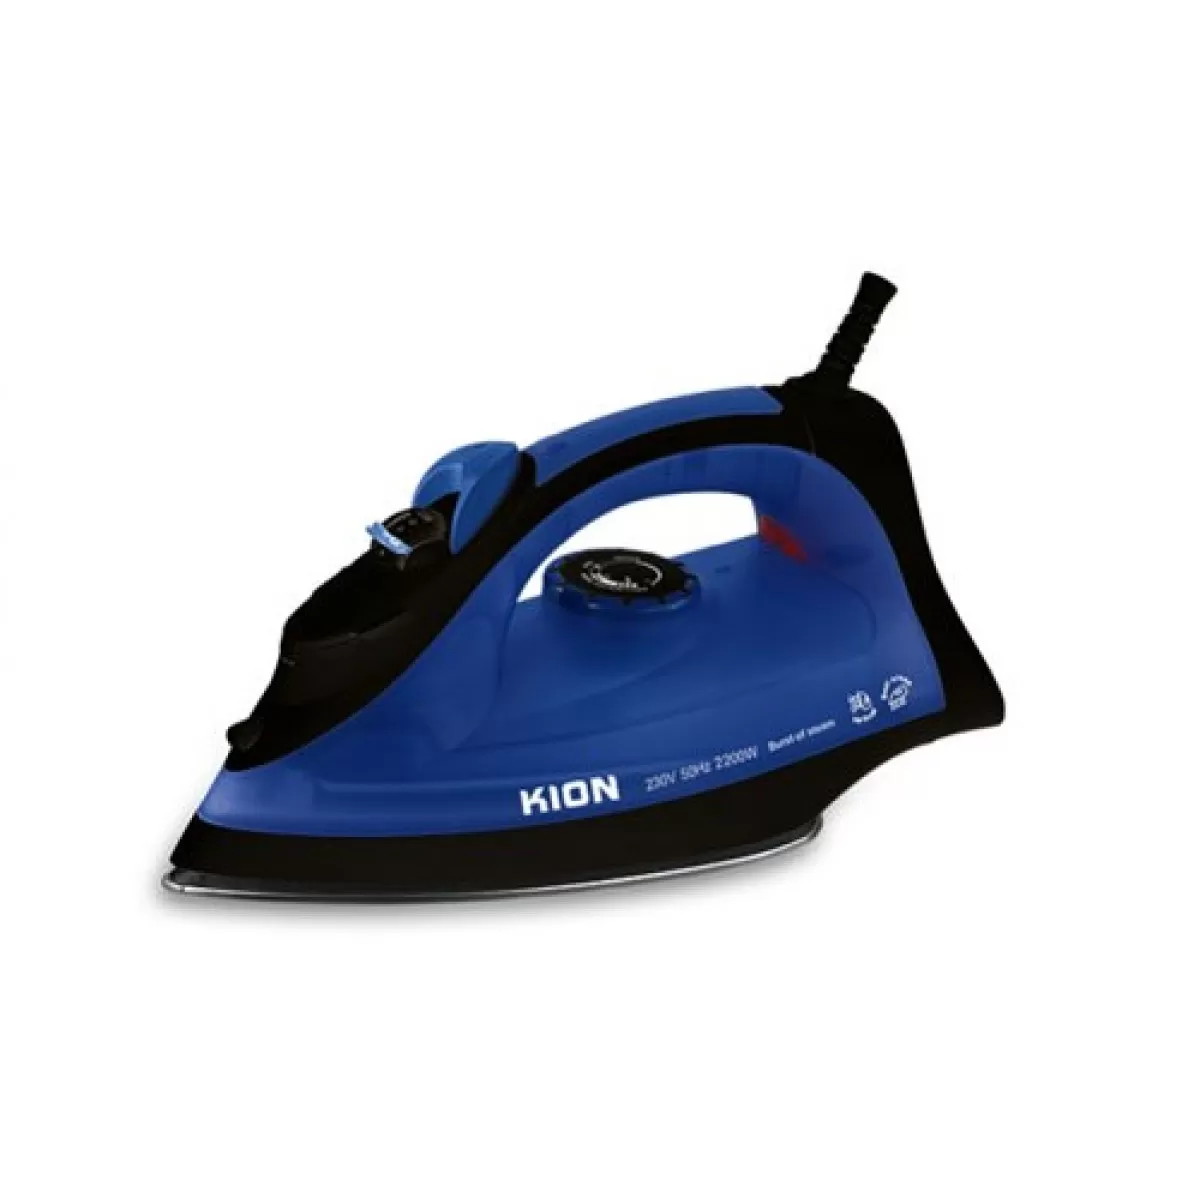 KION Steam Iron 2200W, Blue, KGC/1002